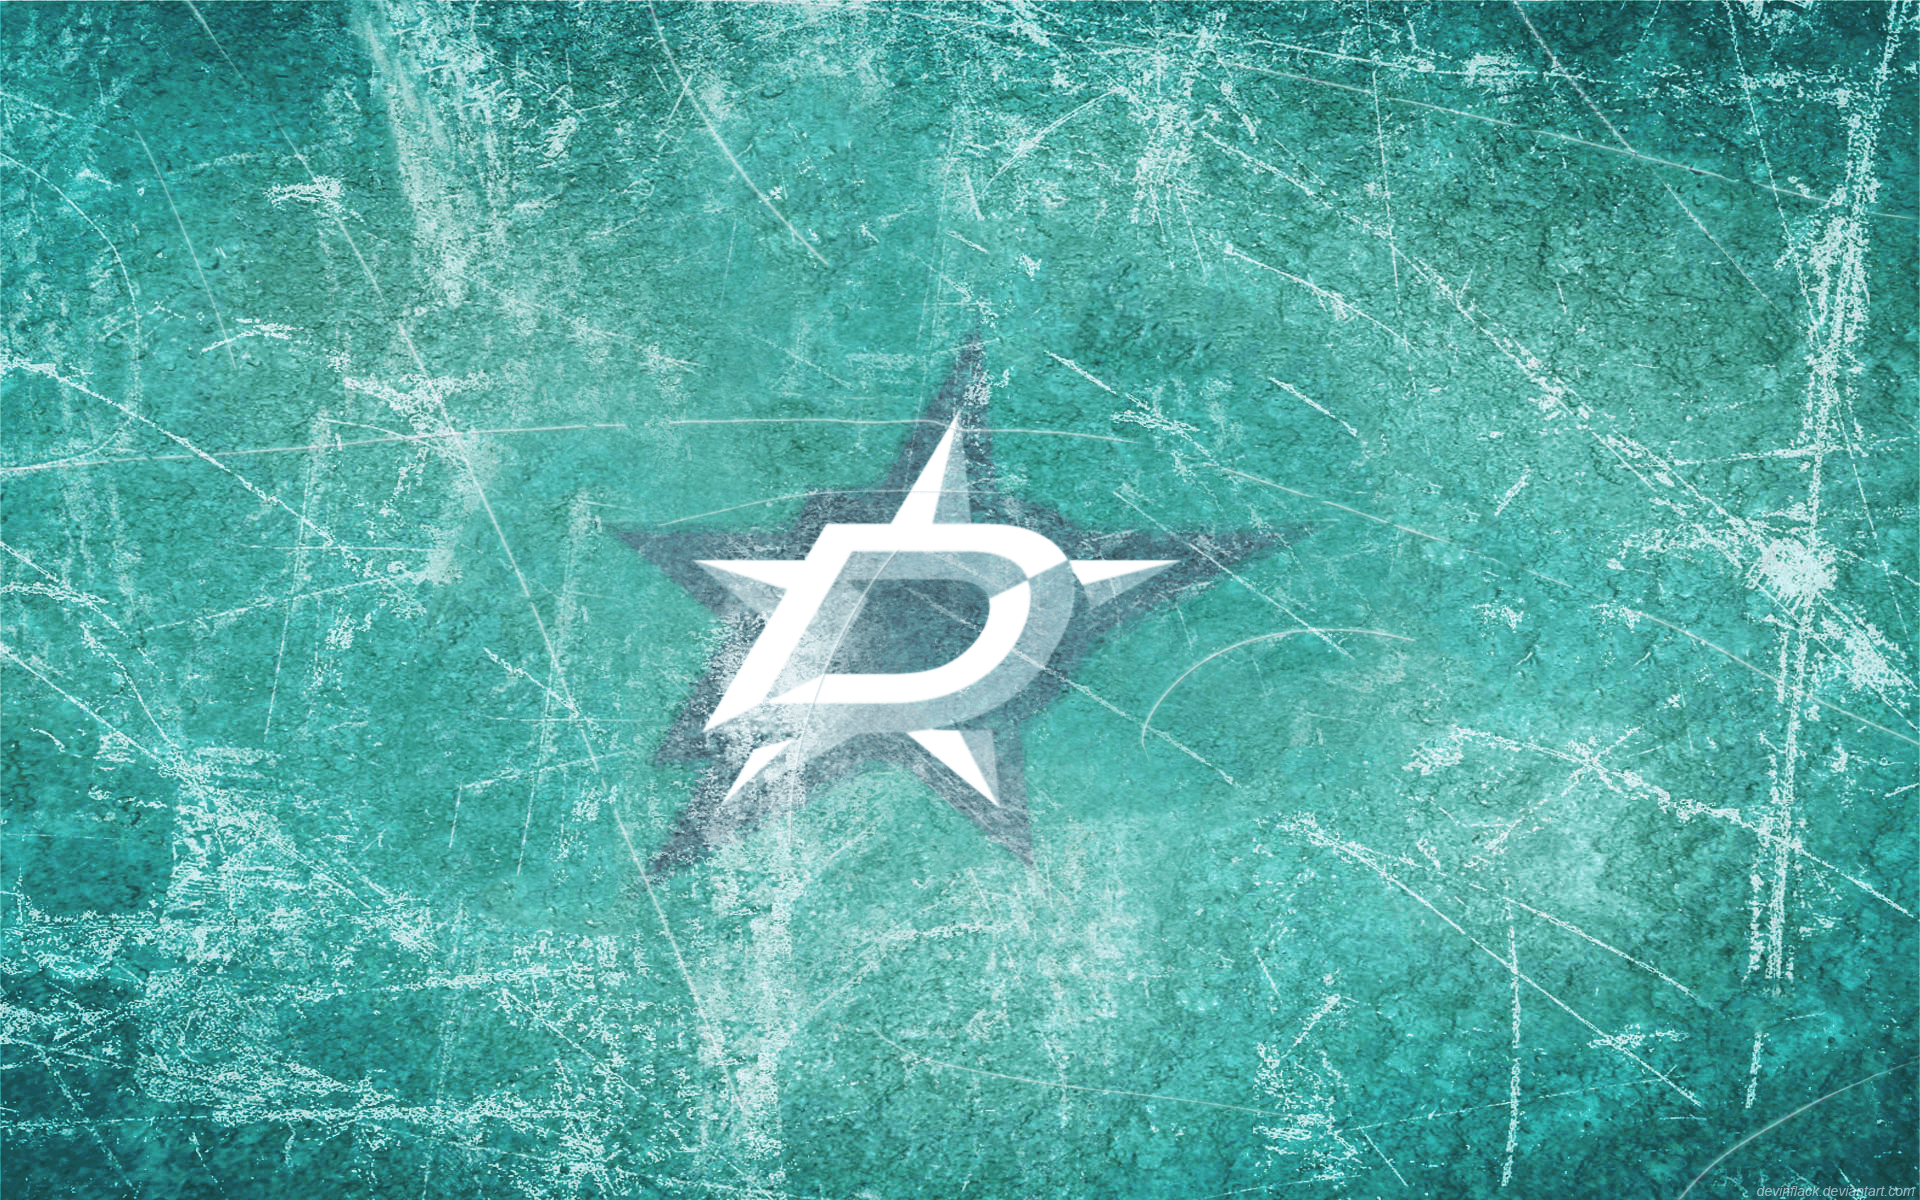 Sports Dallas Stars HD Wallpaper